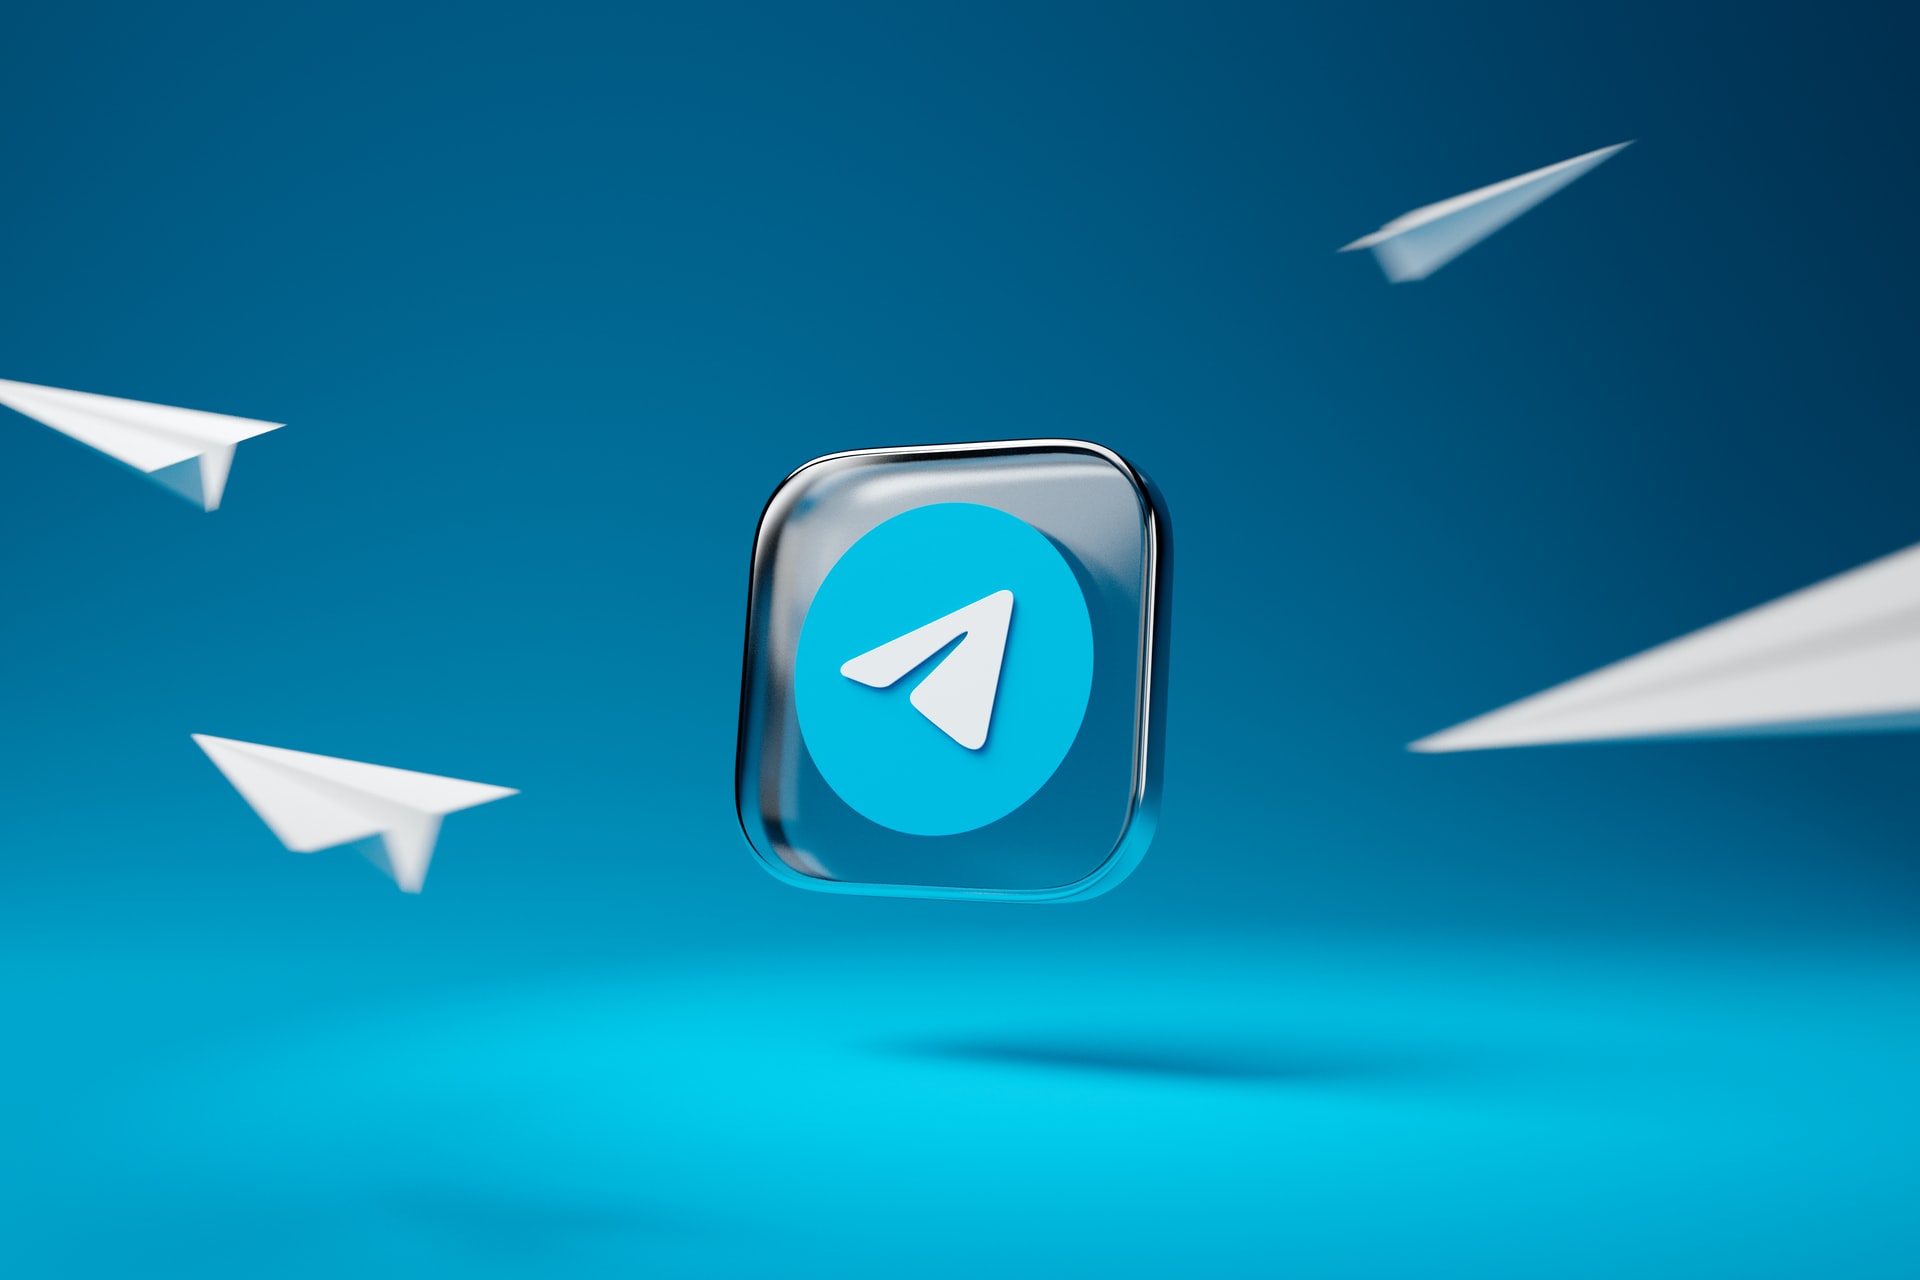 O Telegram quer enlouquecer a concorrência com novo recorde e versão premium